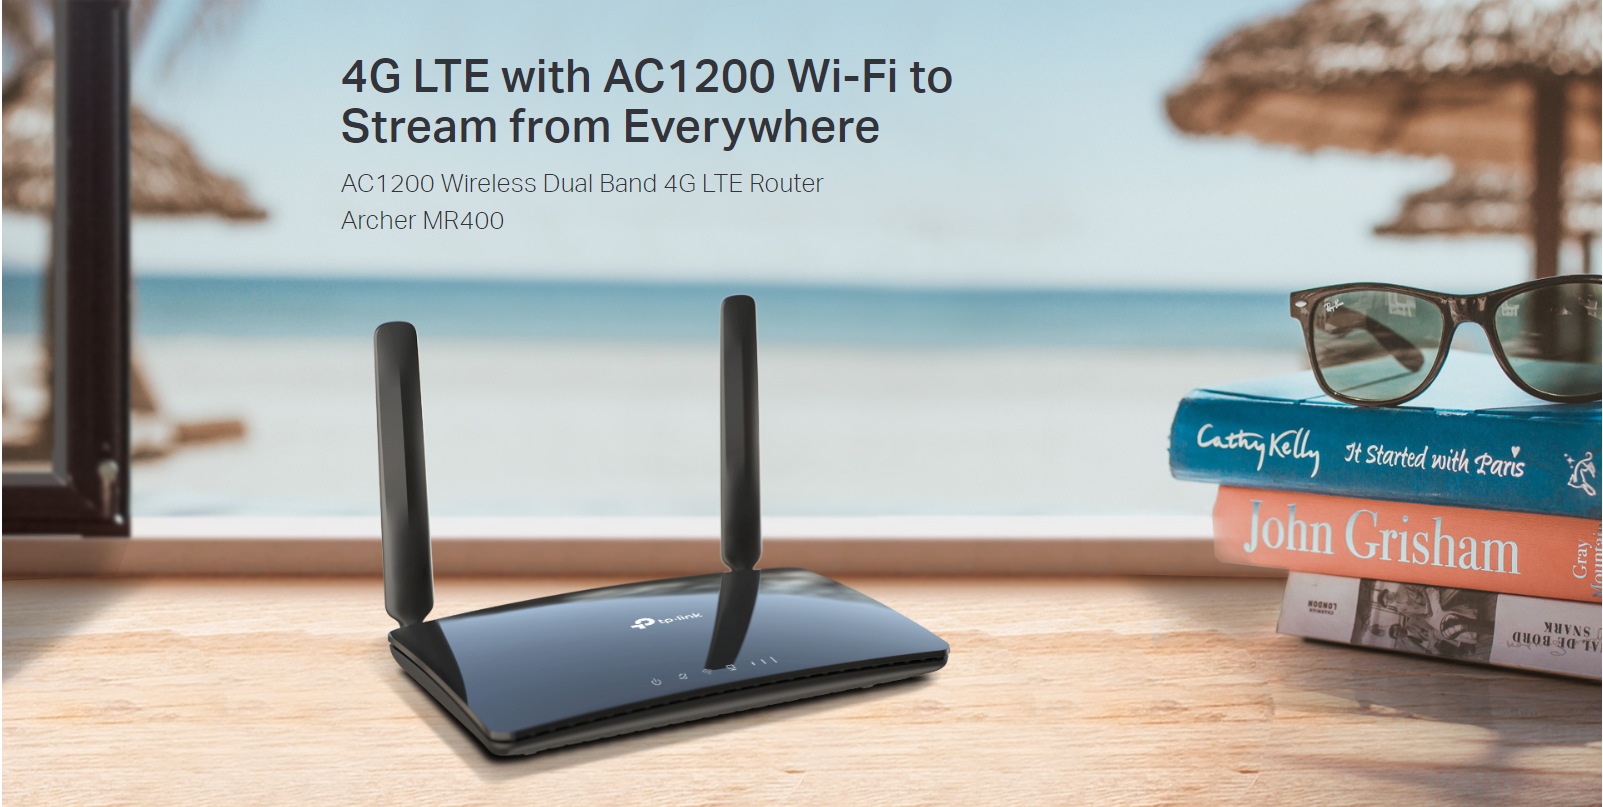 รายละเอียดเพิ่มเติมเกี่ยวกับ Archer MR400 TP-Link เราท์เตอร์ AC1200 Wireless Dual Band 4G LTE Router By Vnix Group